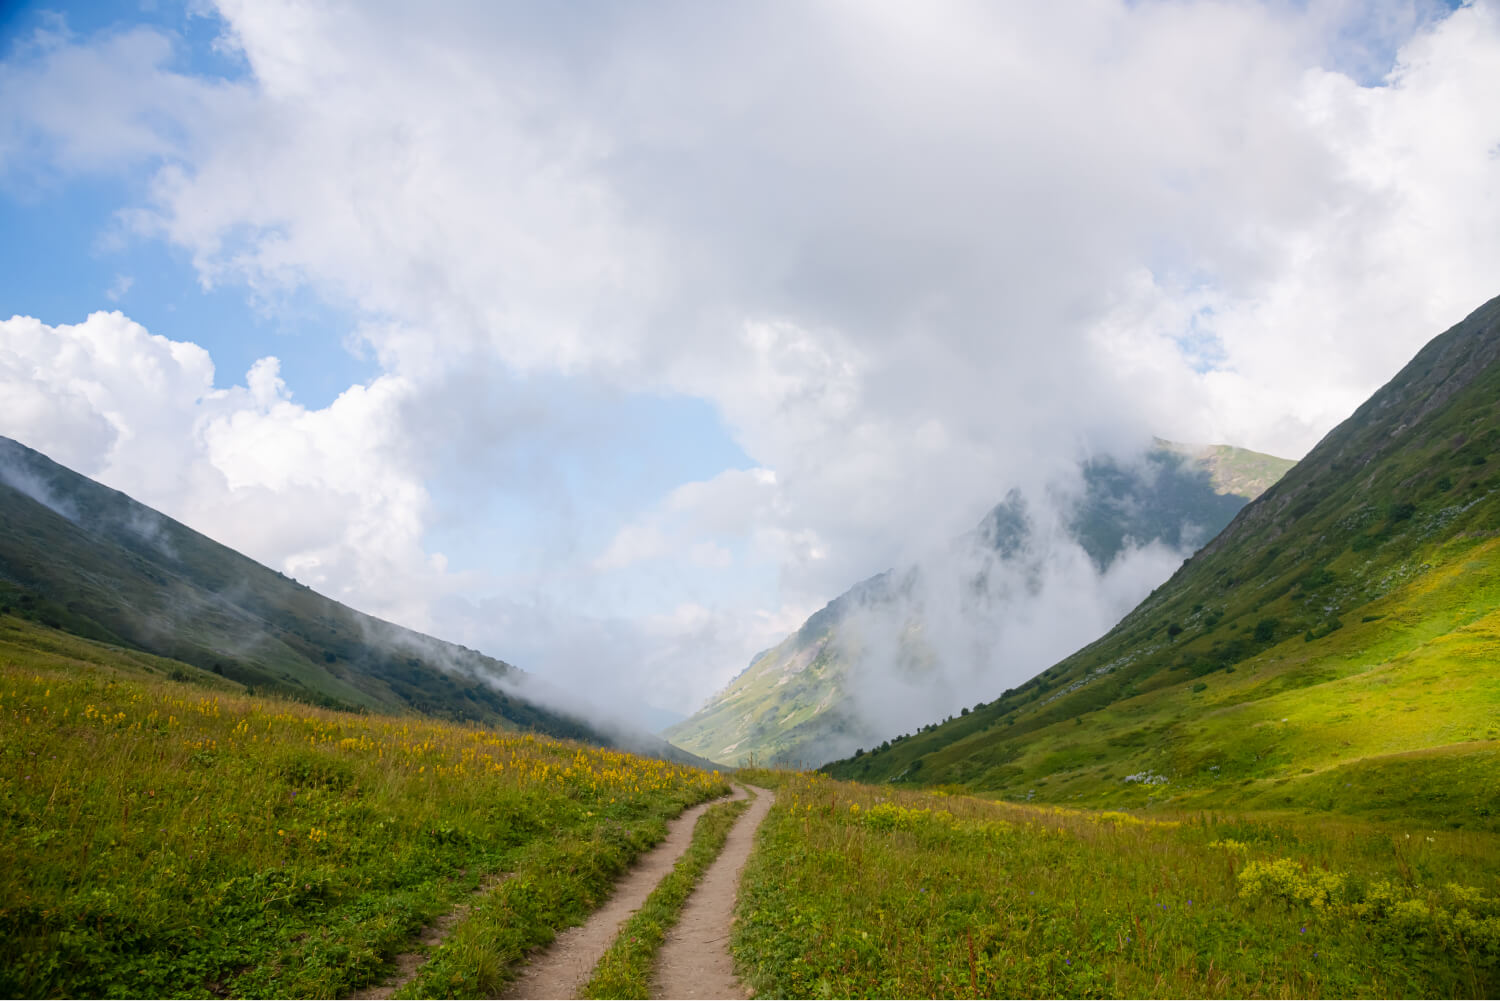 Маршруты экологических троп проходят в живописных местах: реликтовые субтропические леса Колхиды и высокогорные альпийские луга.